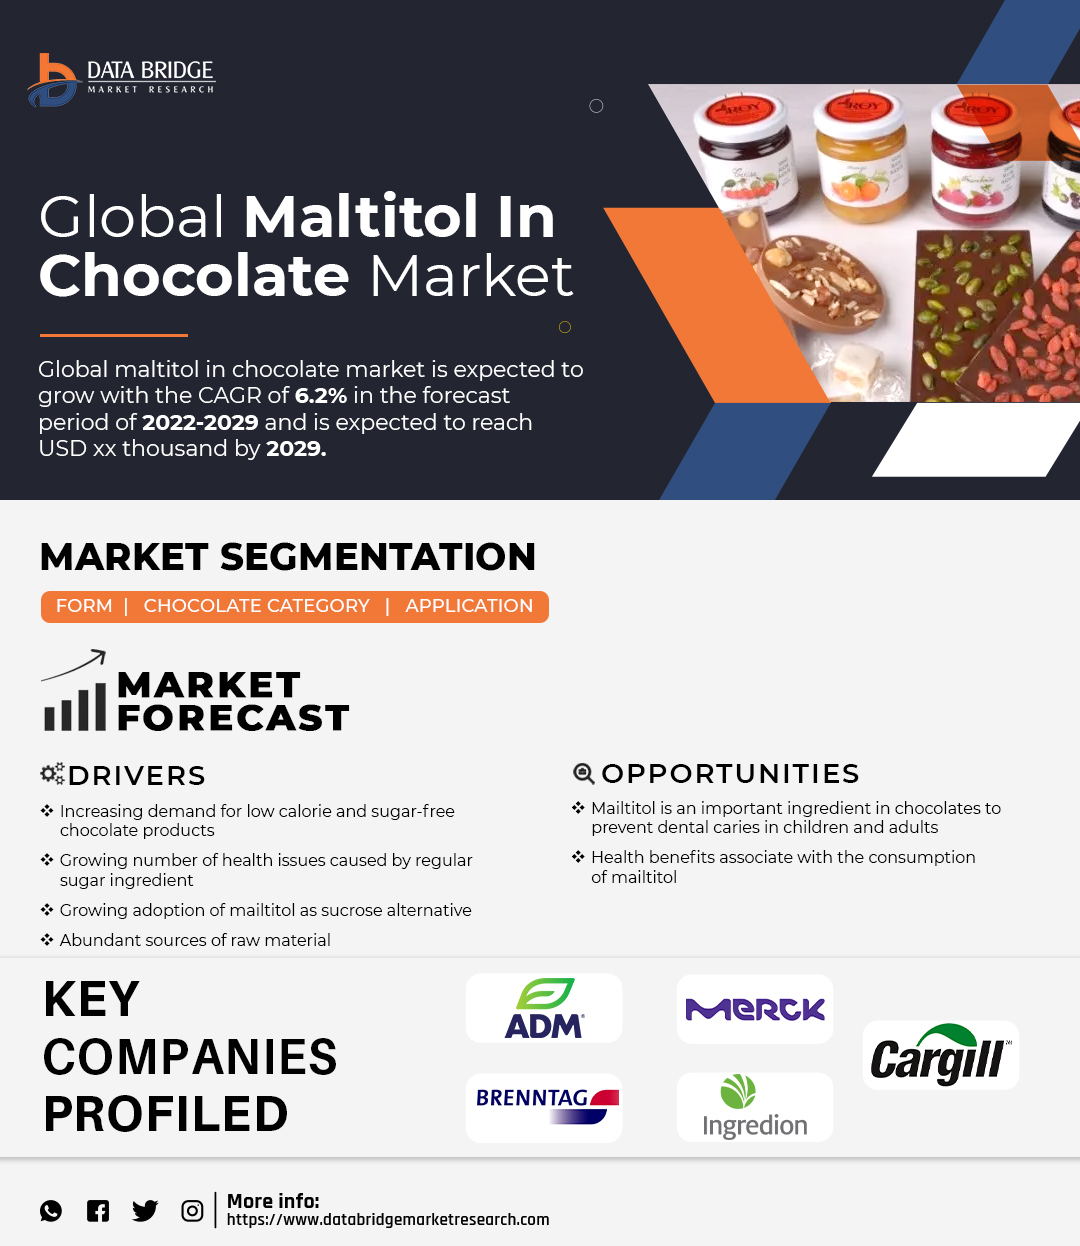 Maltitol in Chocolate Market